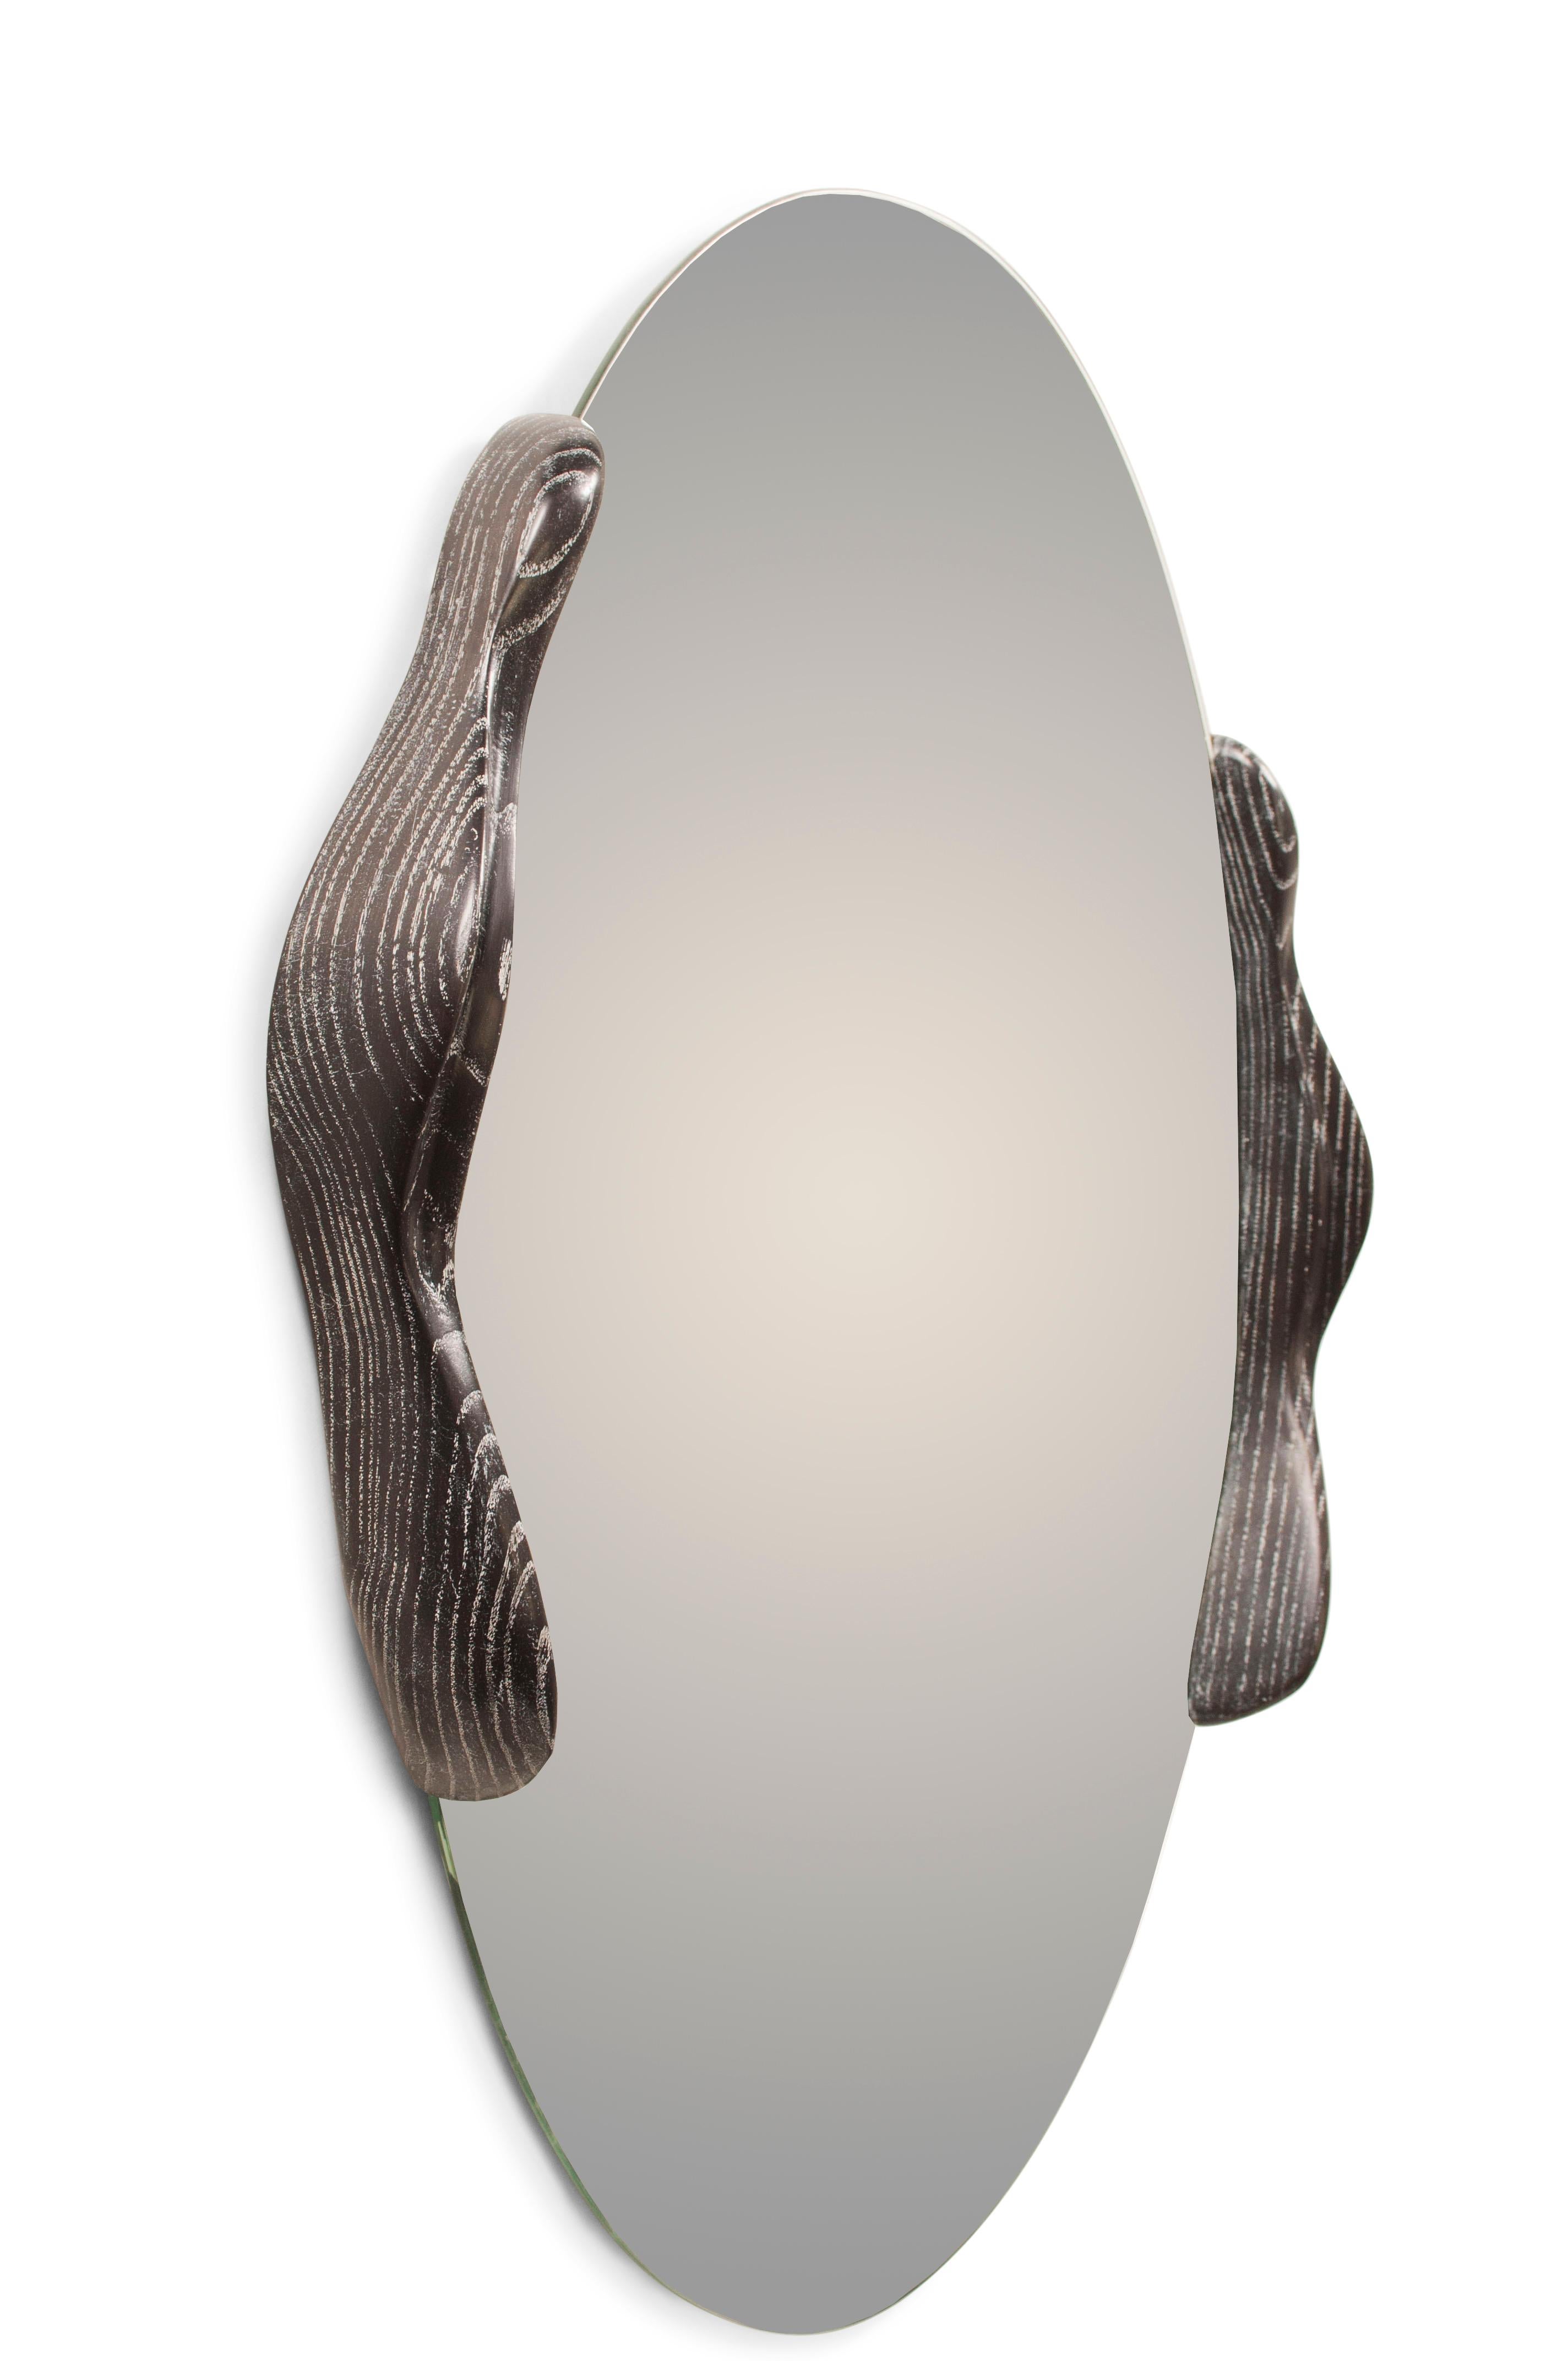 Ovaler Spiegel mit Eschenholz gebeizt Wüste Nacht, entworfen und hergestellt von Amorph.
Dicke des Spiegels 1/4